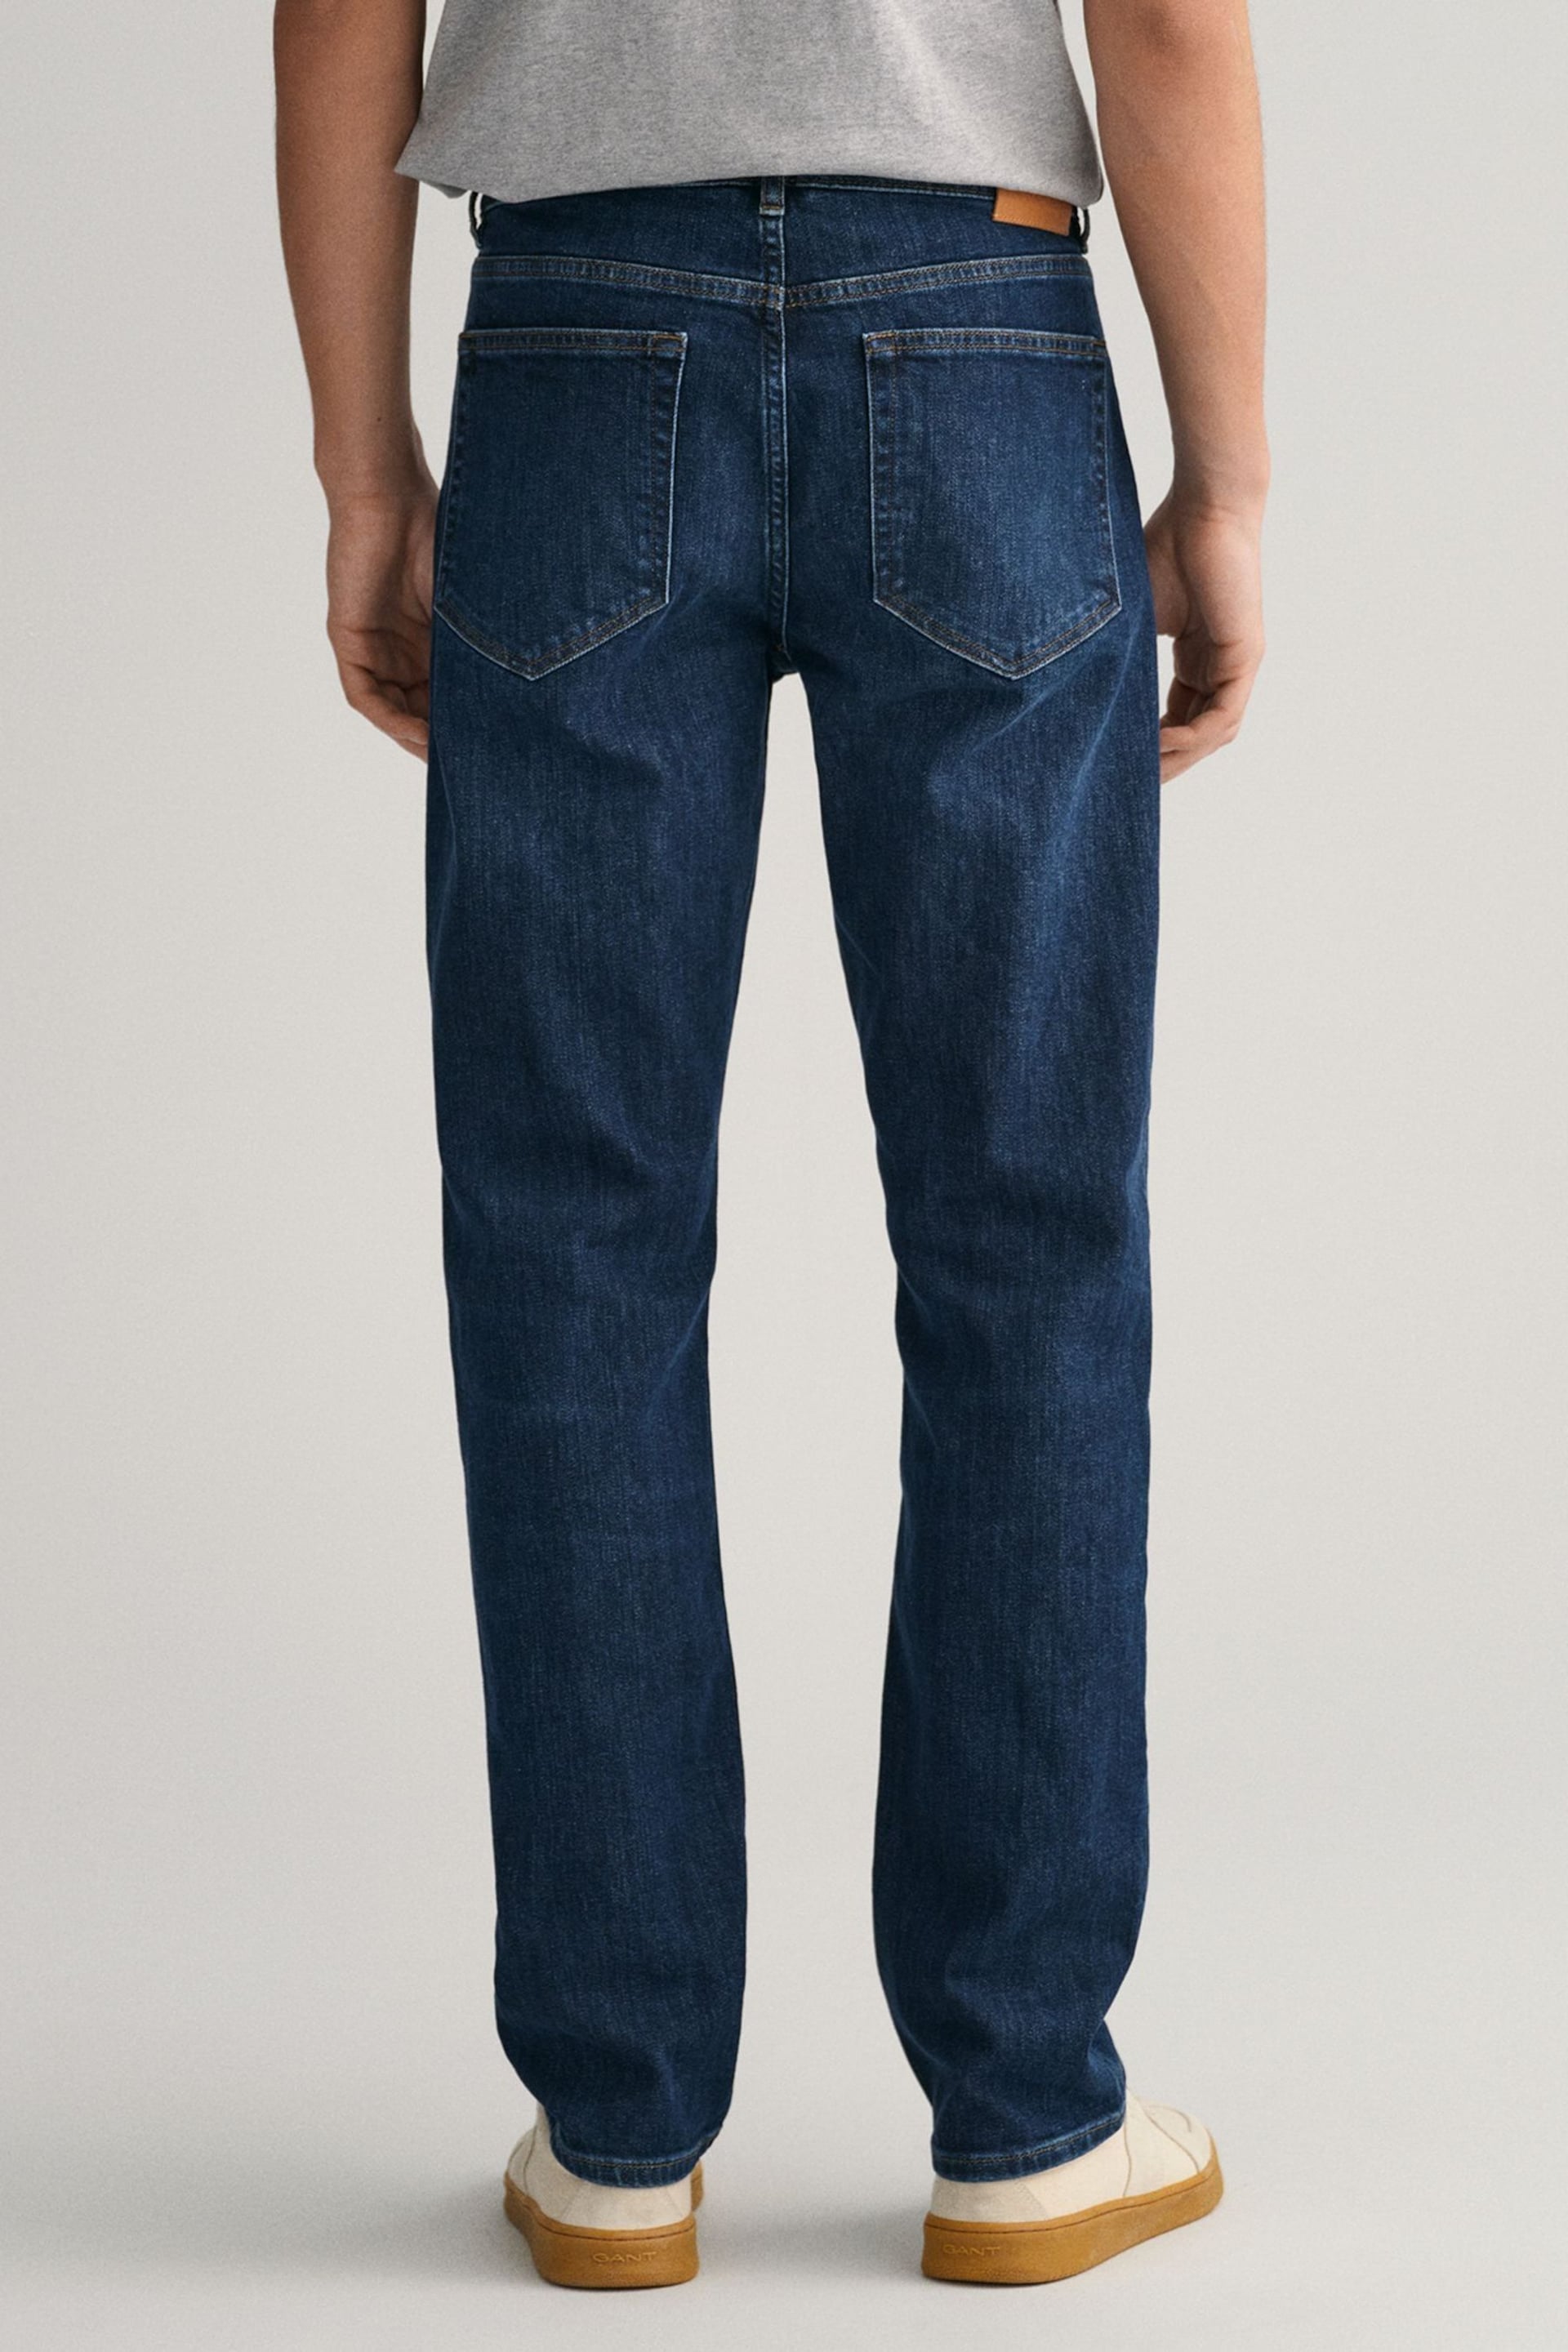 GANT Regular Fit Jeans - Image 2 of 5